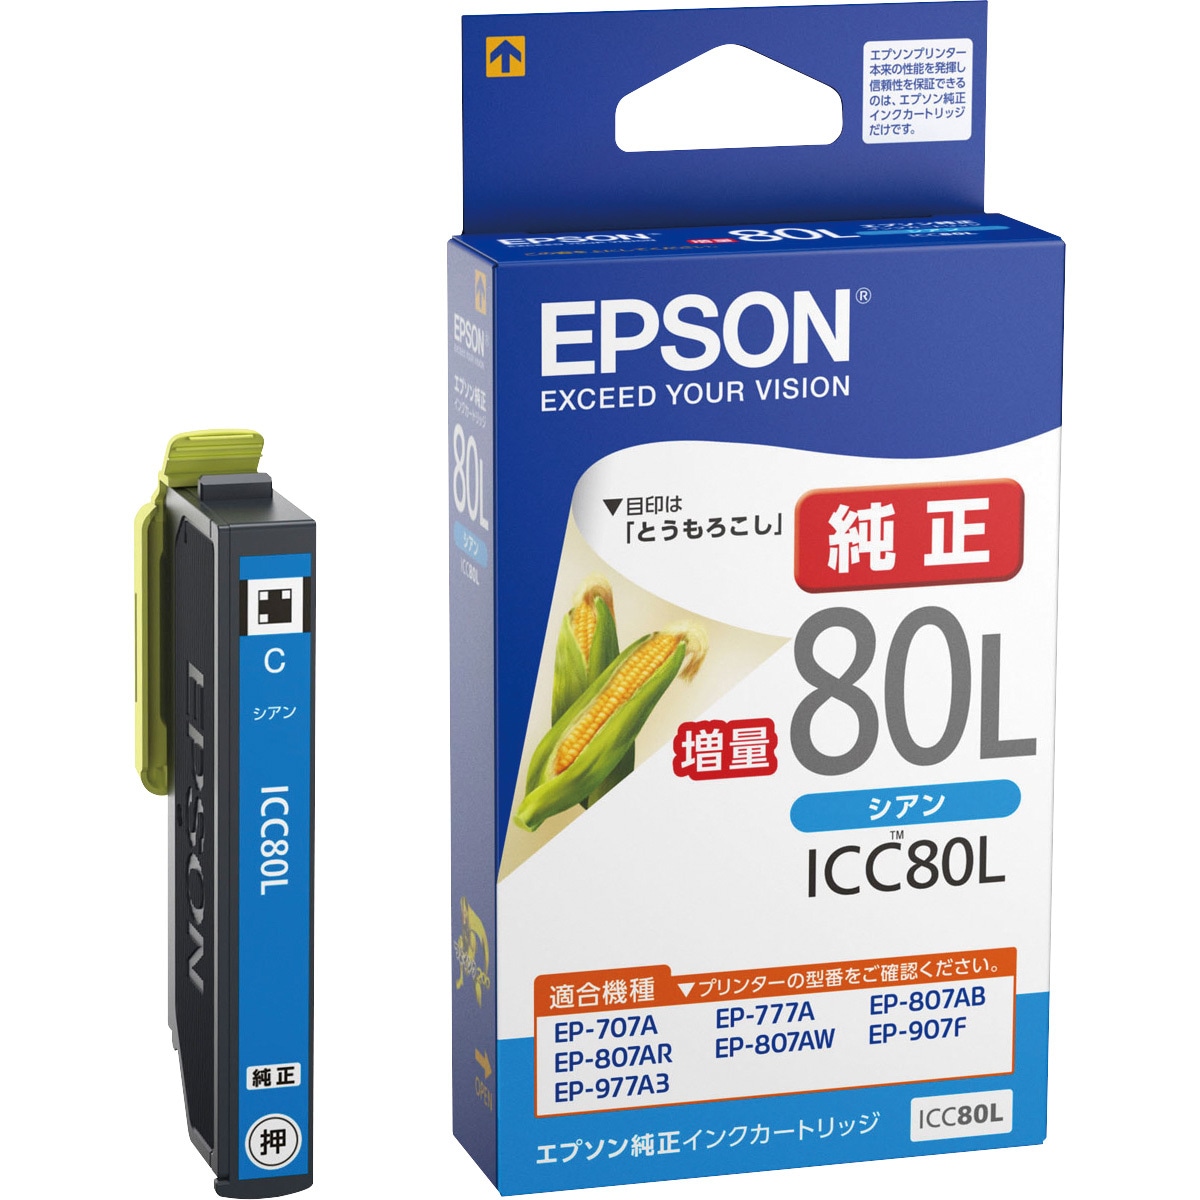 Icc80l 純正インクカートリッジ Epson Ic80l Epson 純正品 シアン Icc80l 1個 通販モノタロウ